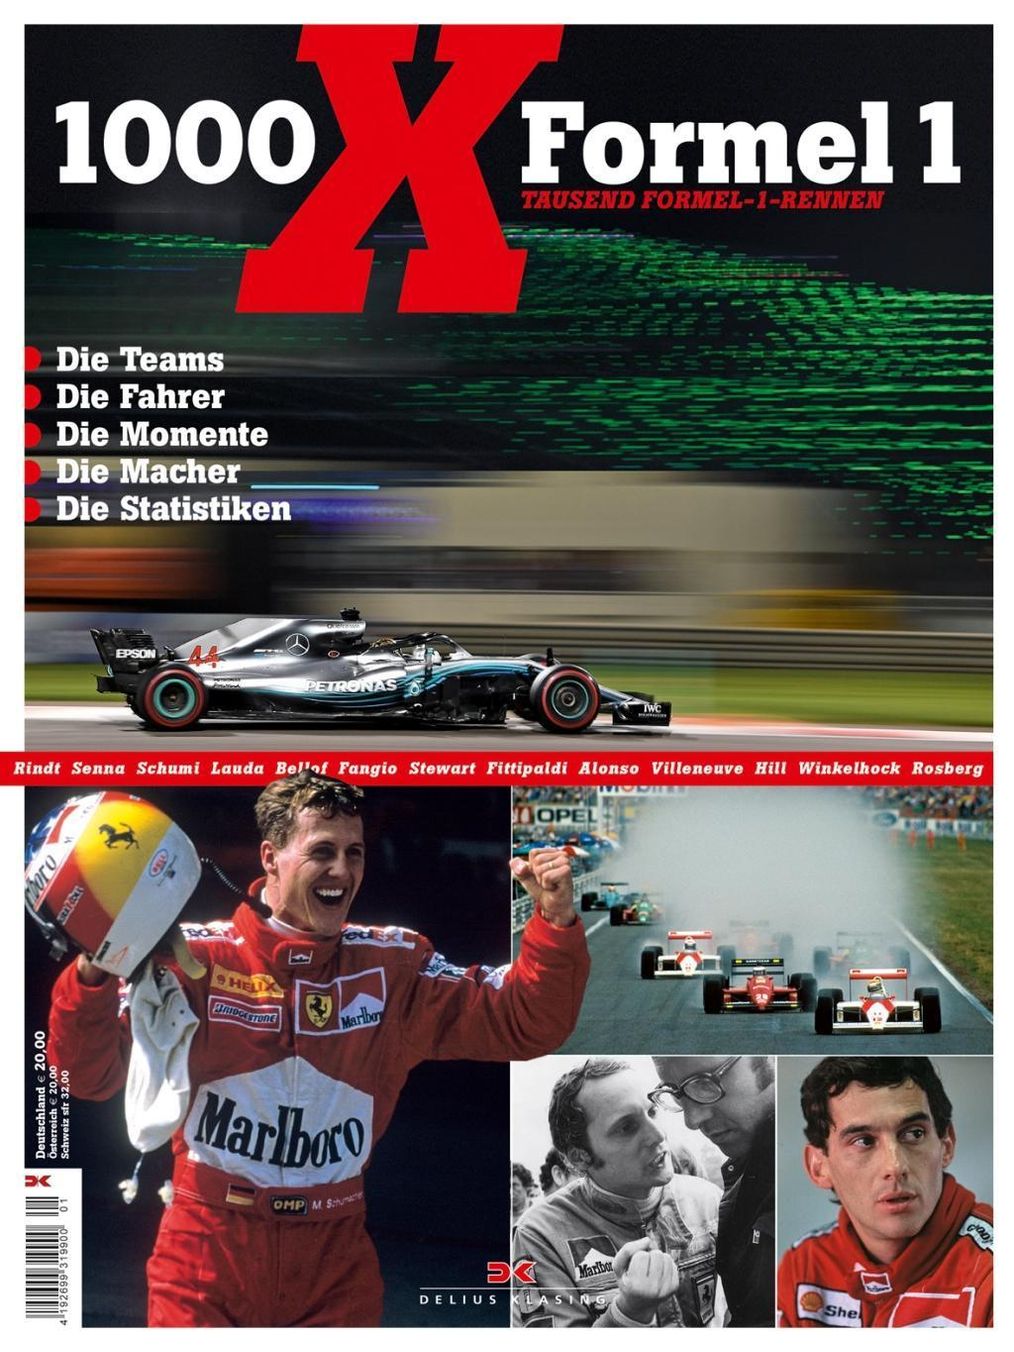 1000 x Formel 1 Buch von Elmar Brümmer versandkostenfrei bei Weltbild.ch